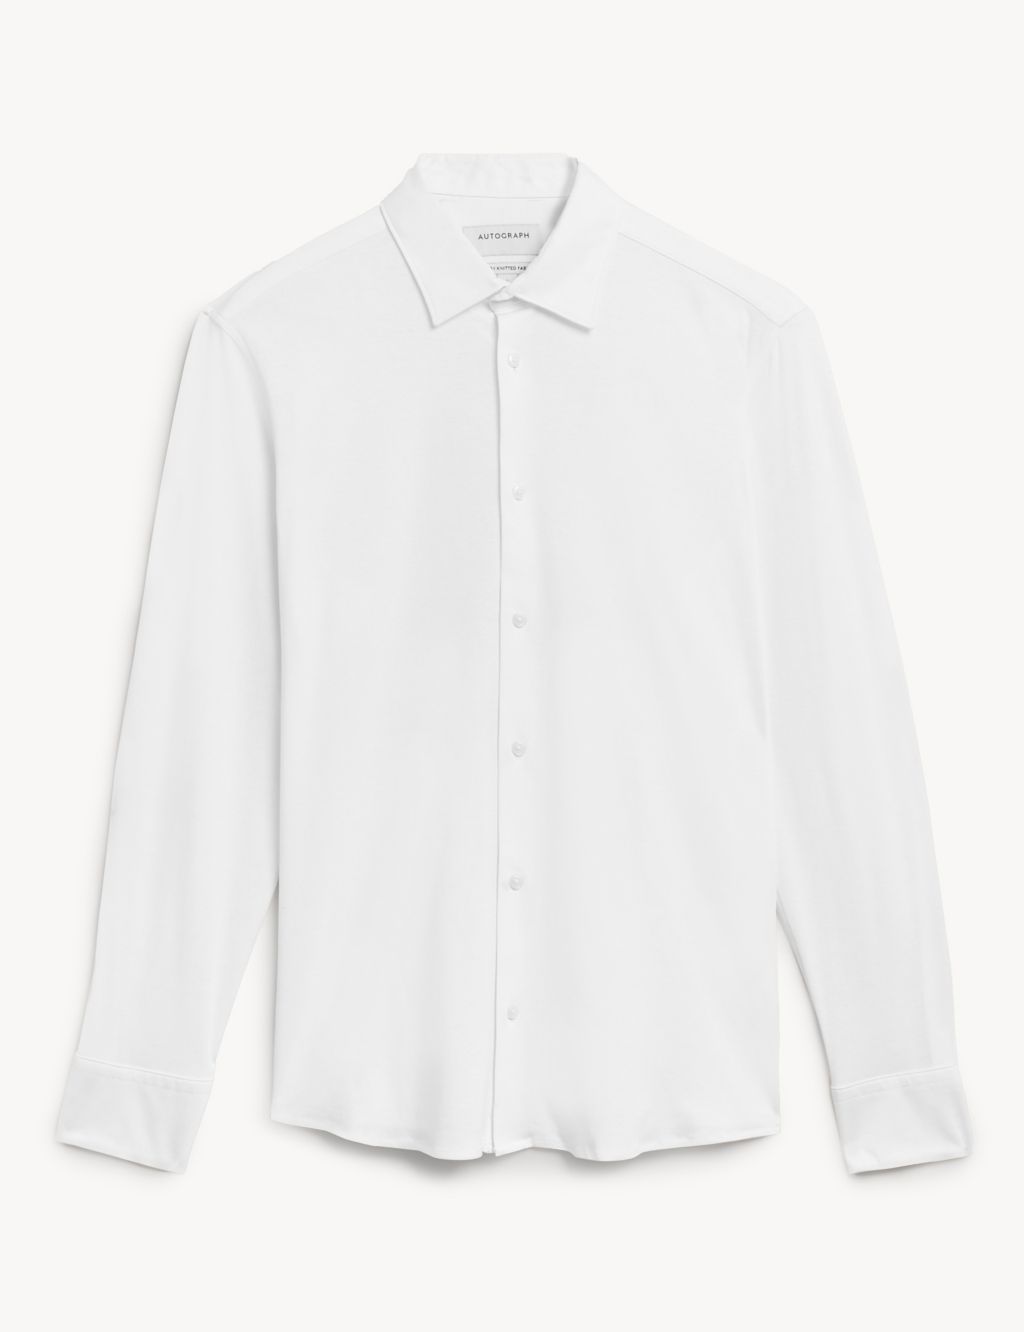 Slim Fit Jersey Cotton Shirt | Autograph | M&S